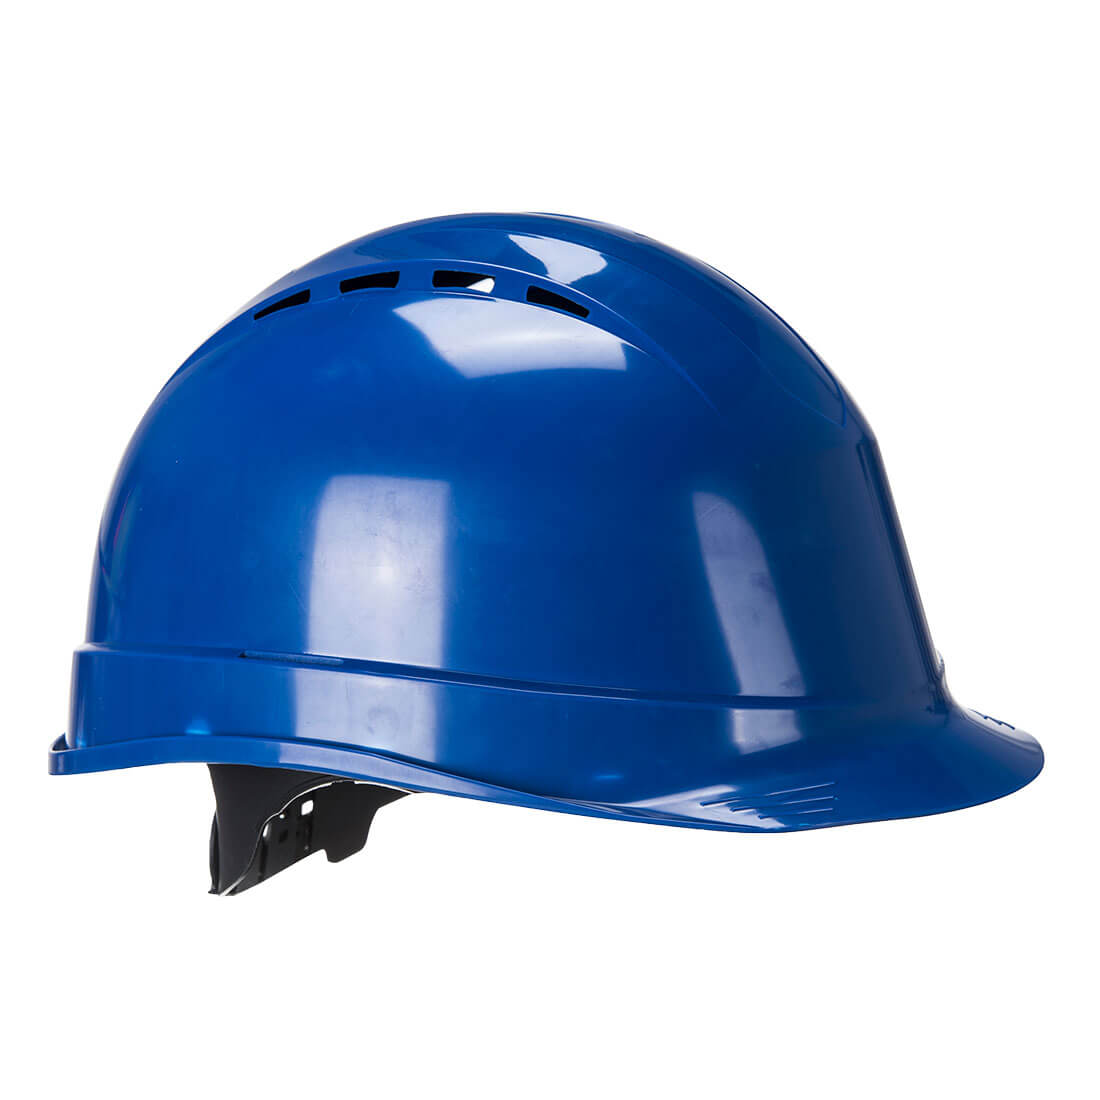 Arrow Safety Helmet   - Royal Blue